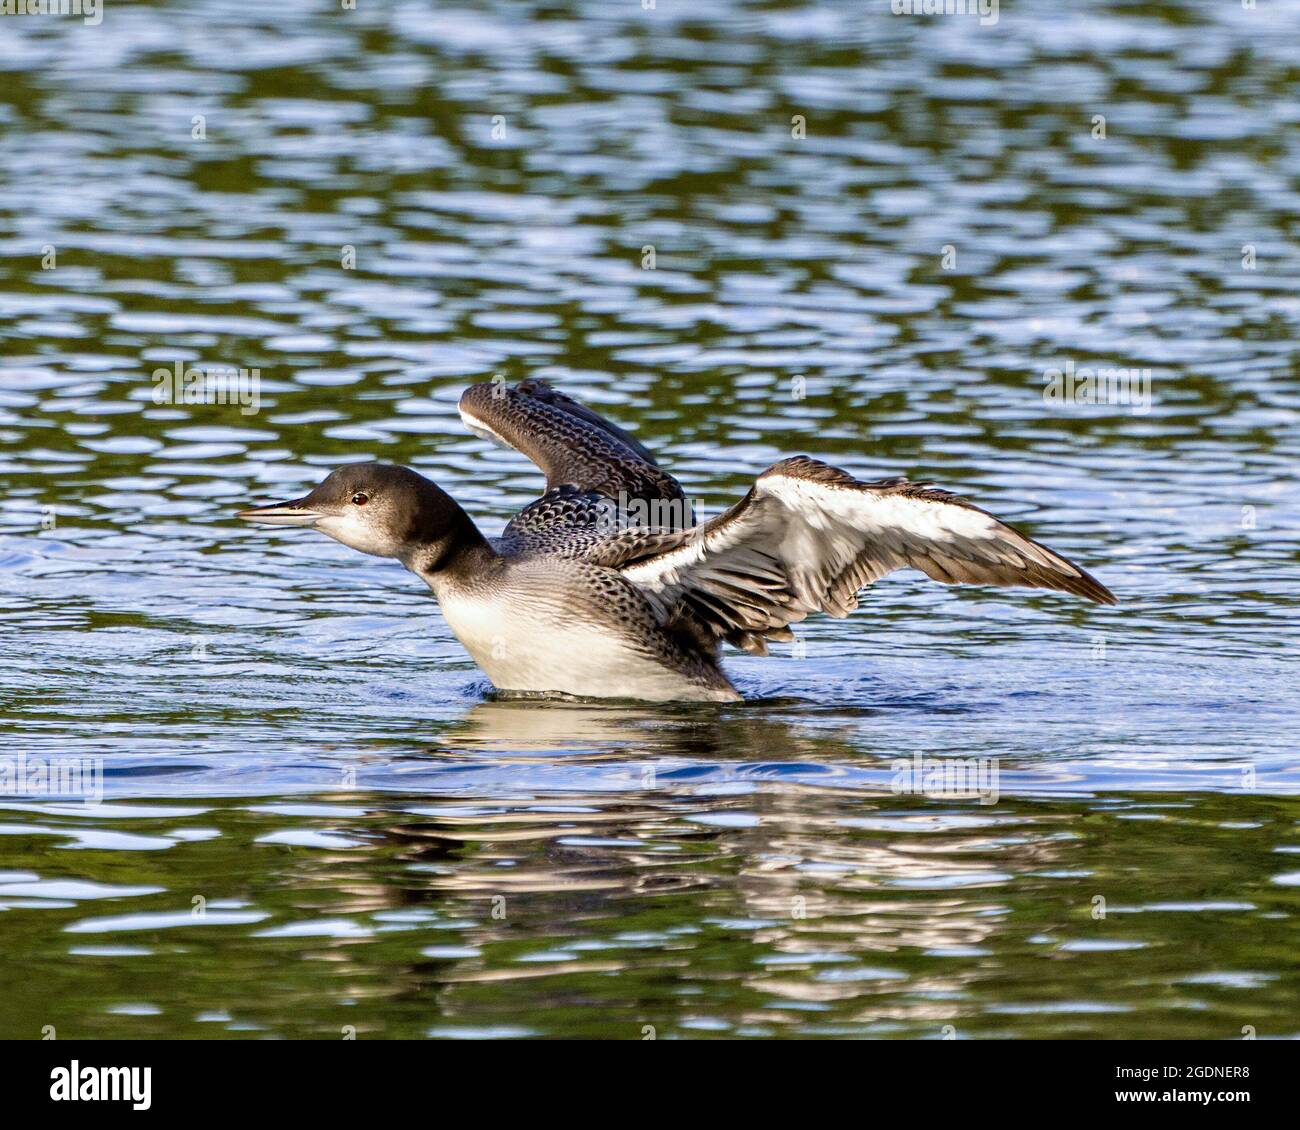 Comune Loon immaturo giovane uccello nuoto e flapping le sue ali nel suo ambiente e habitat circostante, mostrando la sua crescente piume palcoscenico. Foto Stock